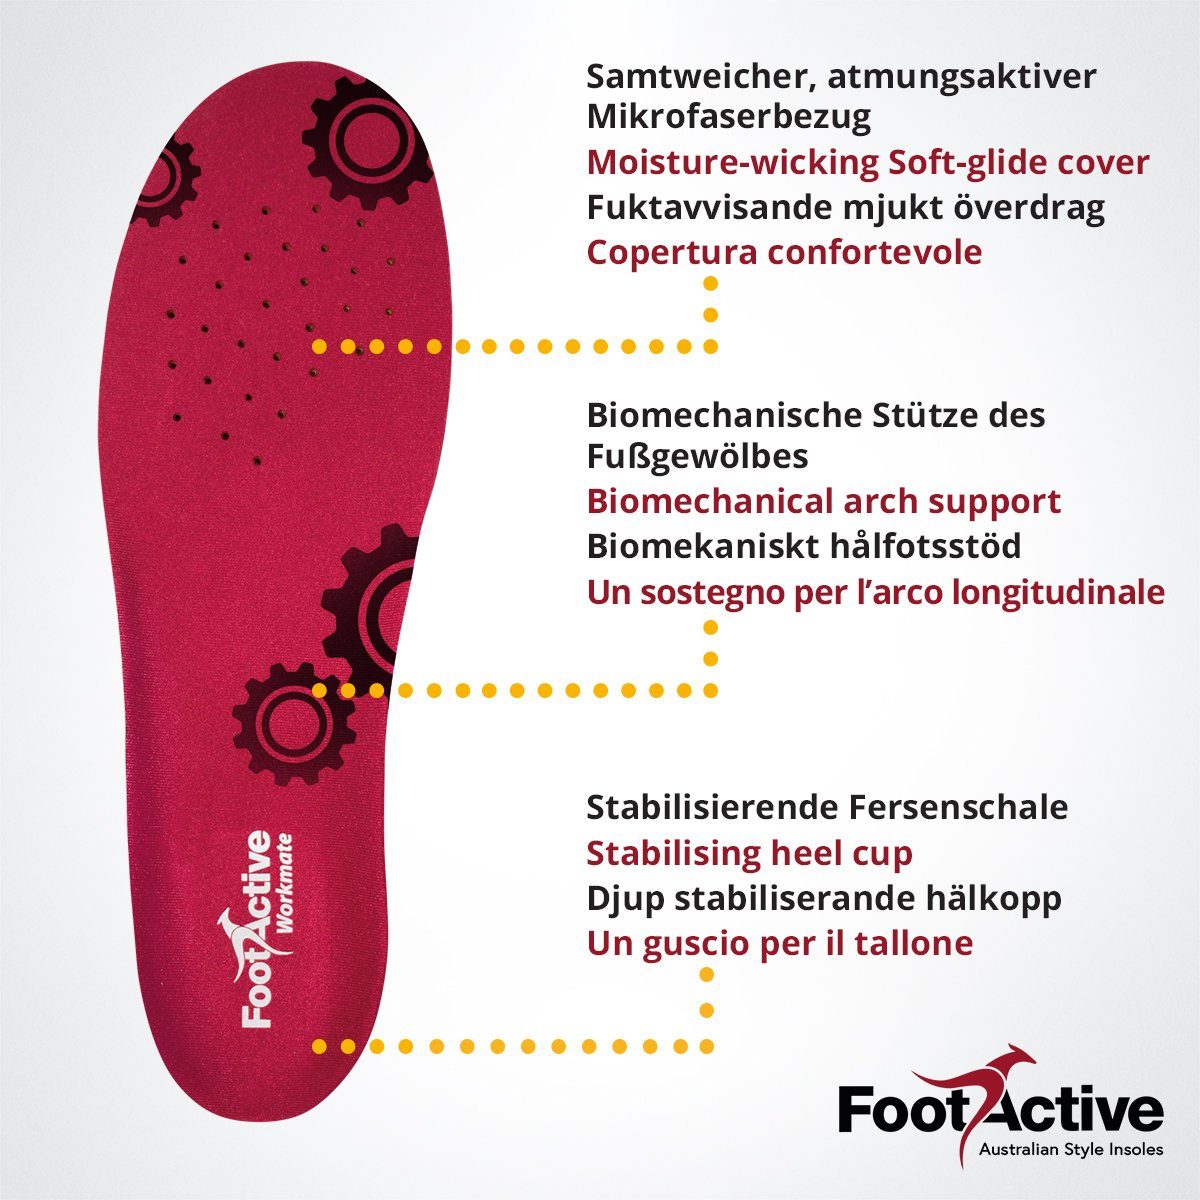 Füße WORKMATE, optimale harten FootActive Halt Ihre Böden. Alltag Dämpfung. für Ideal Einlegesohlen und FootActive und - Beruf auf Schützt Fester